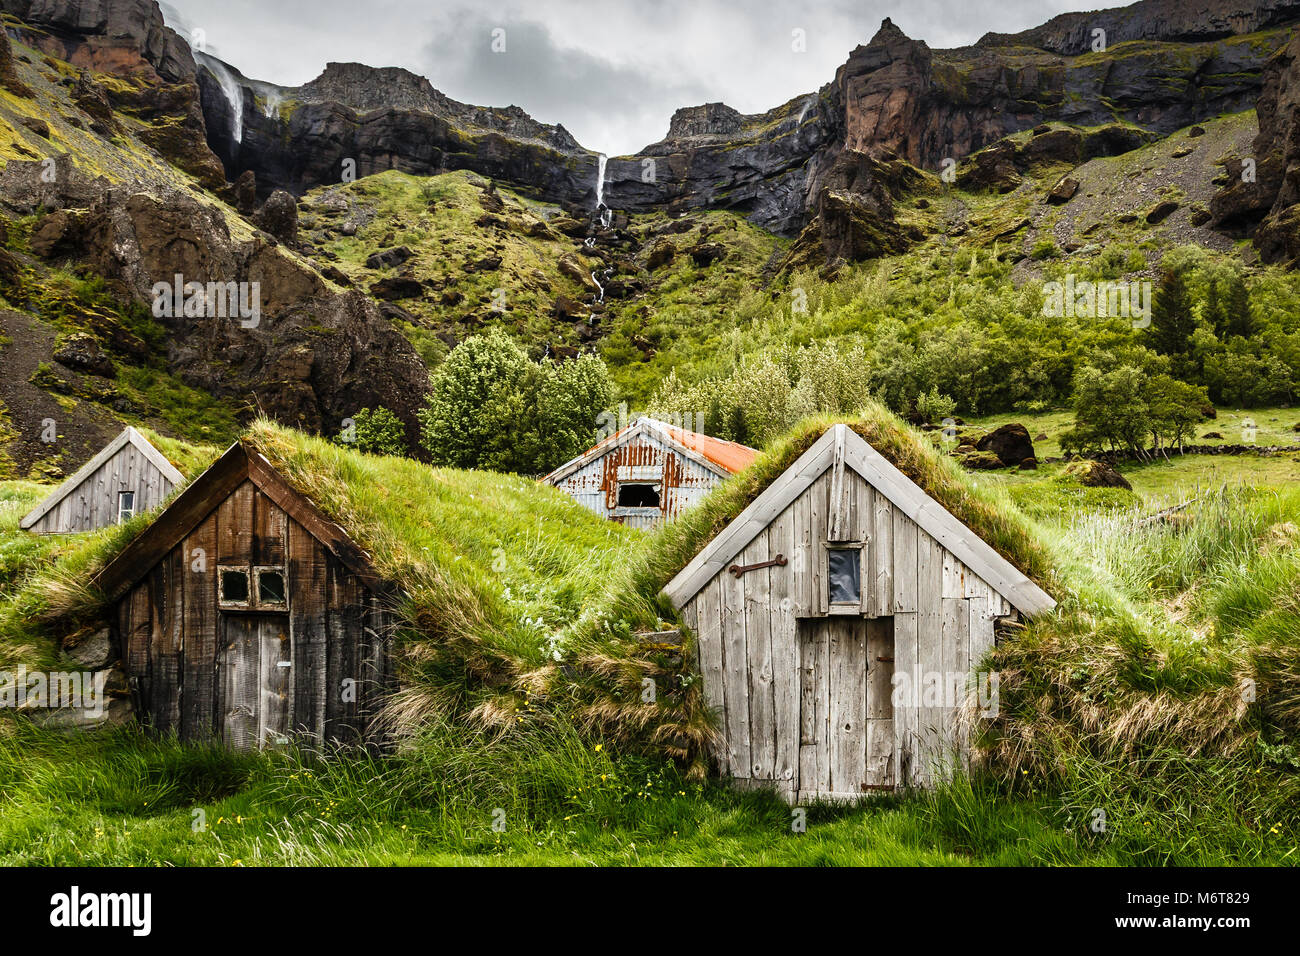 Maisons et gazon islandais canyon rocheux avec une cascade dans le fond près de Kalfafell vilage, Sud de l'Islande Banque D'Images